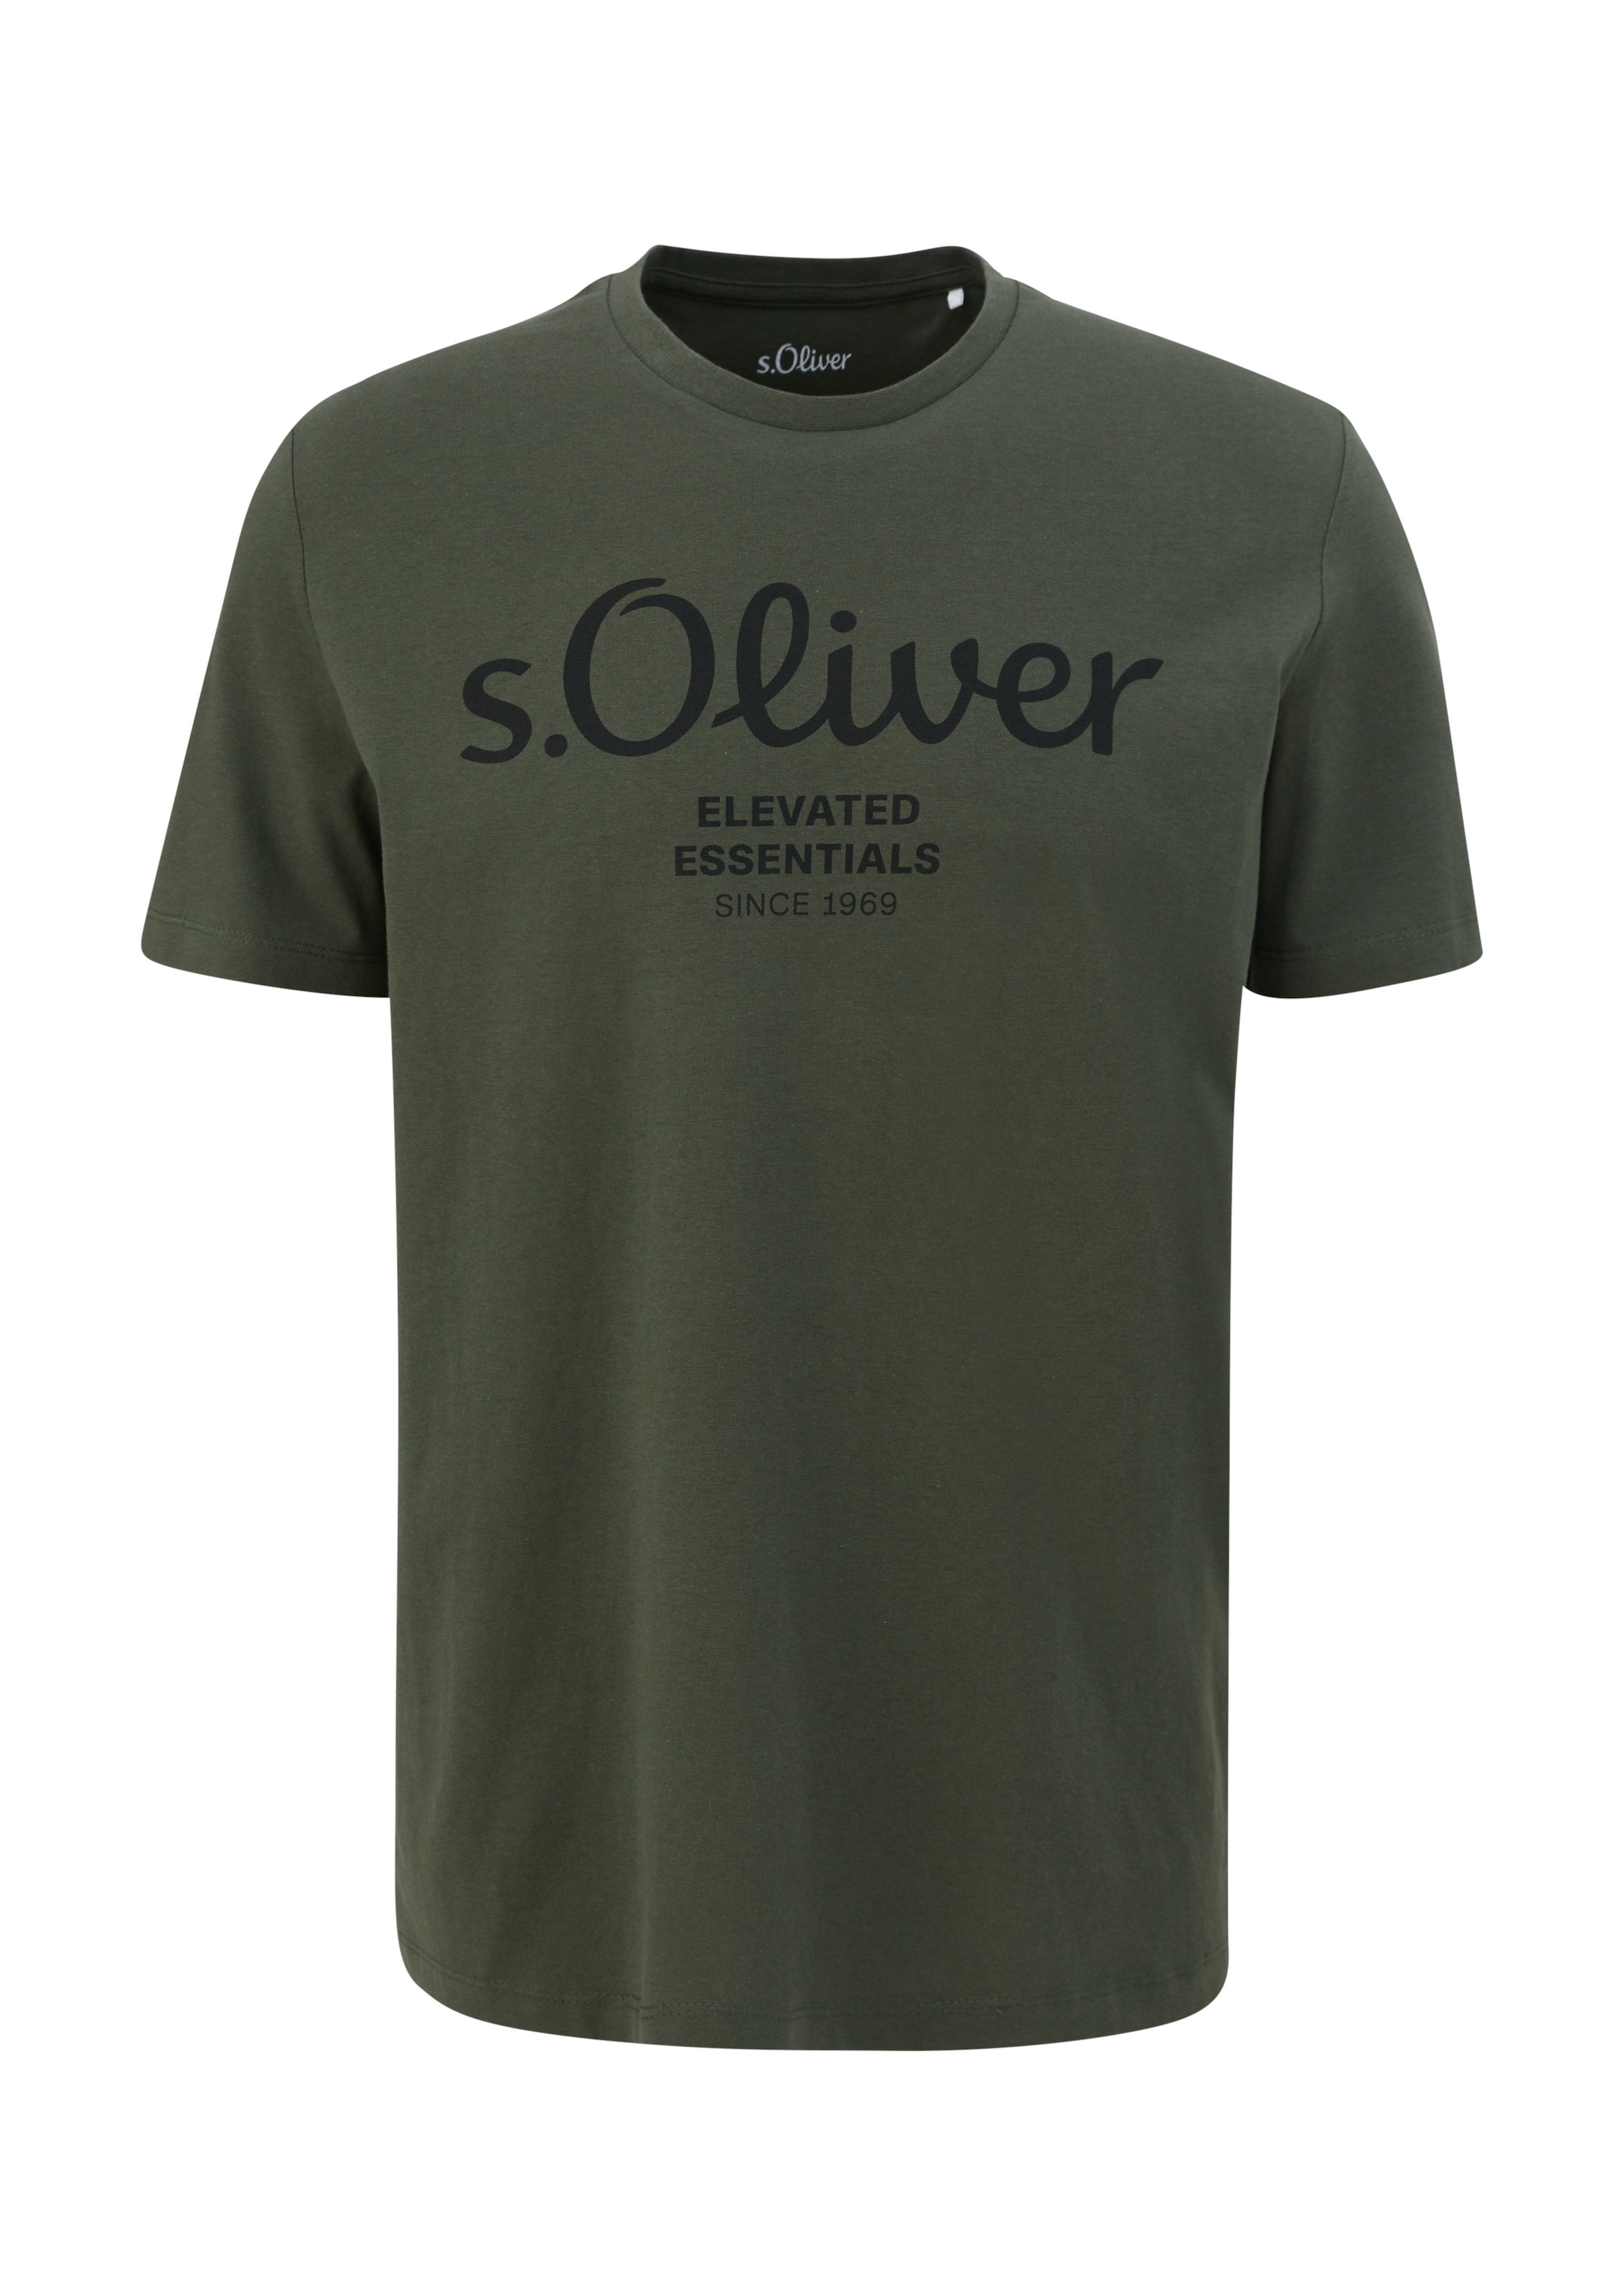 s.Oliver T-Shirt, aus atmungsaktiver Baumwolle